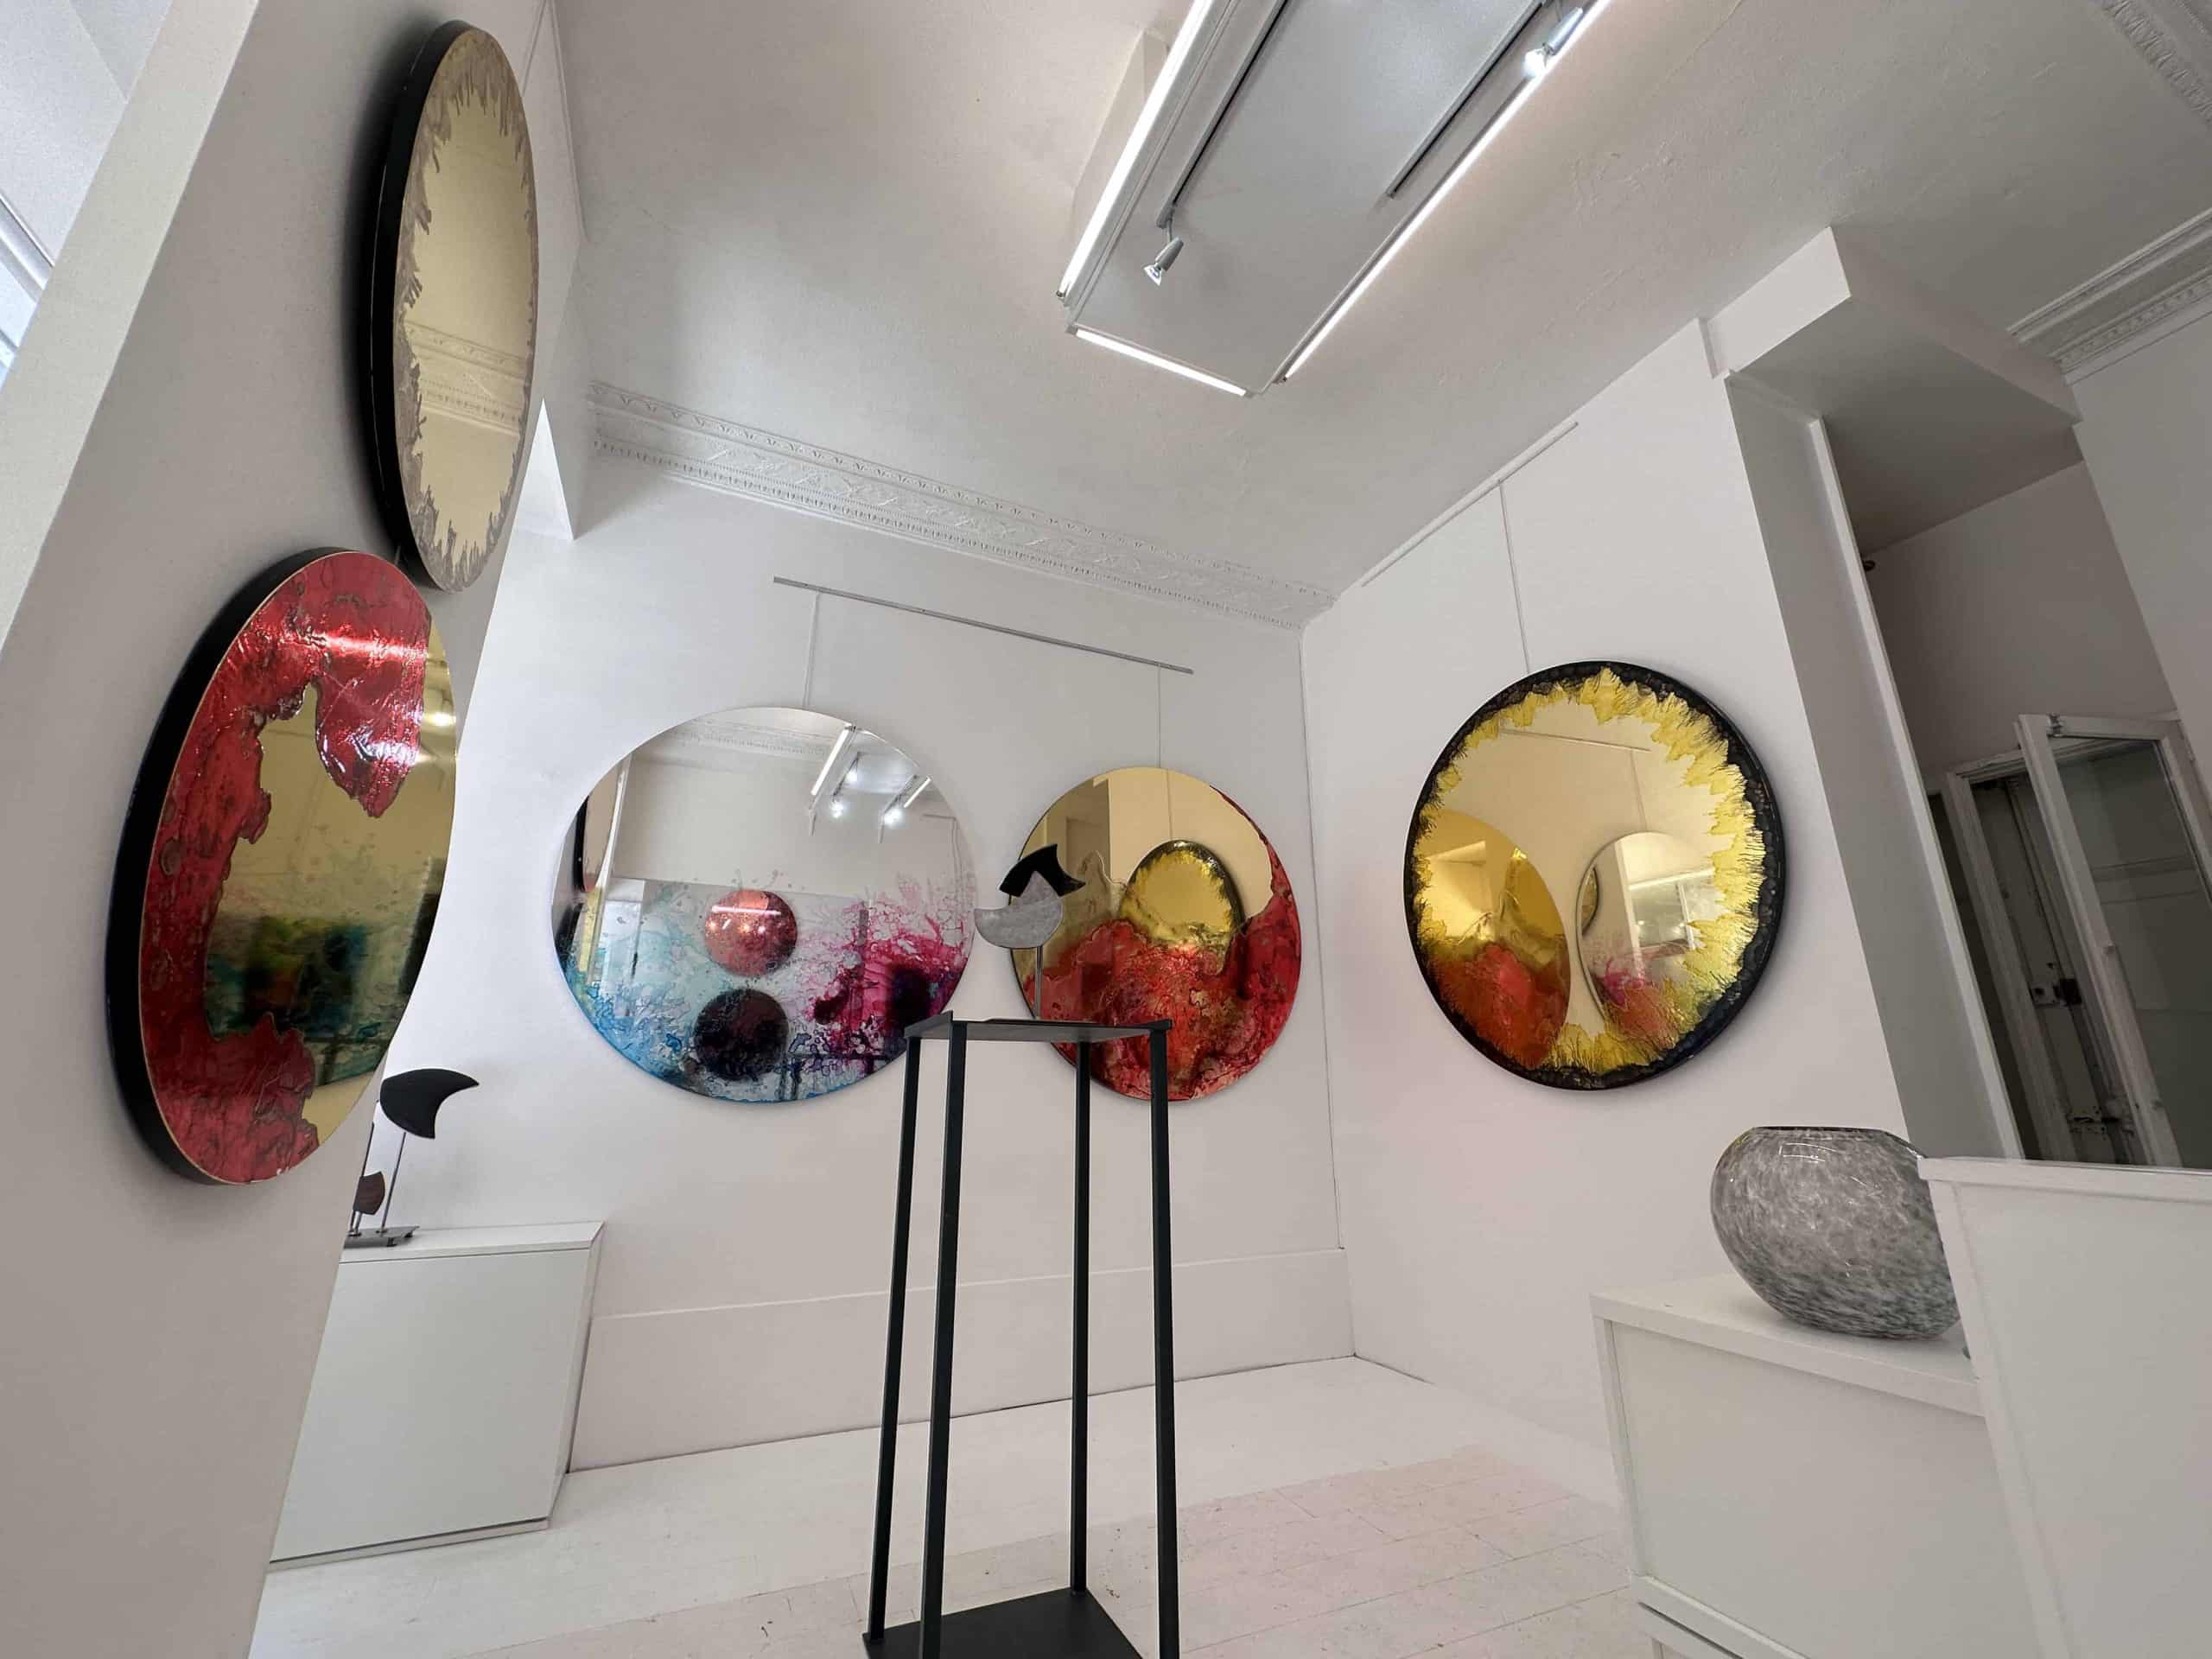 Miroirs Peints Like Mirror à l'expo de Adelaïde Leferme à la Galerie Choiseul